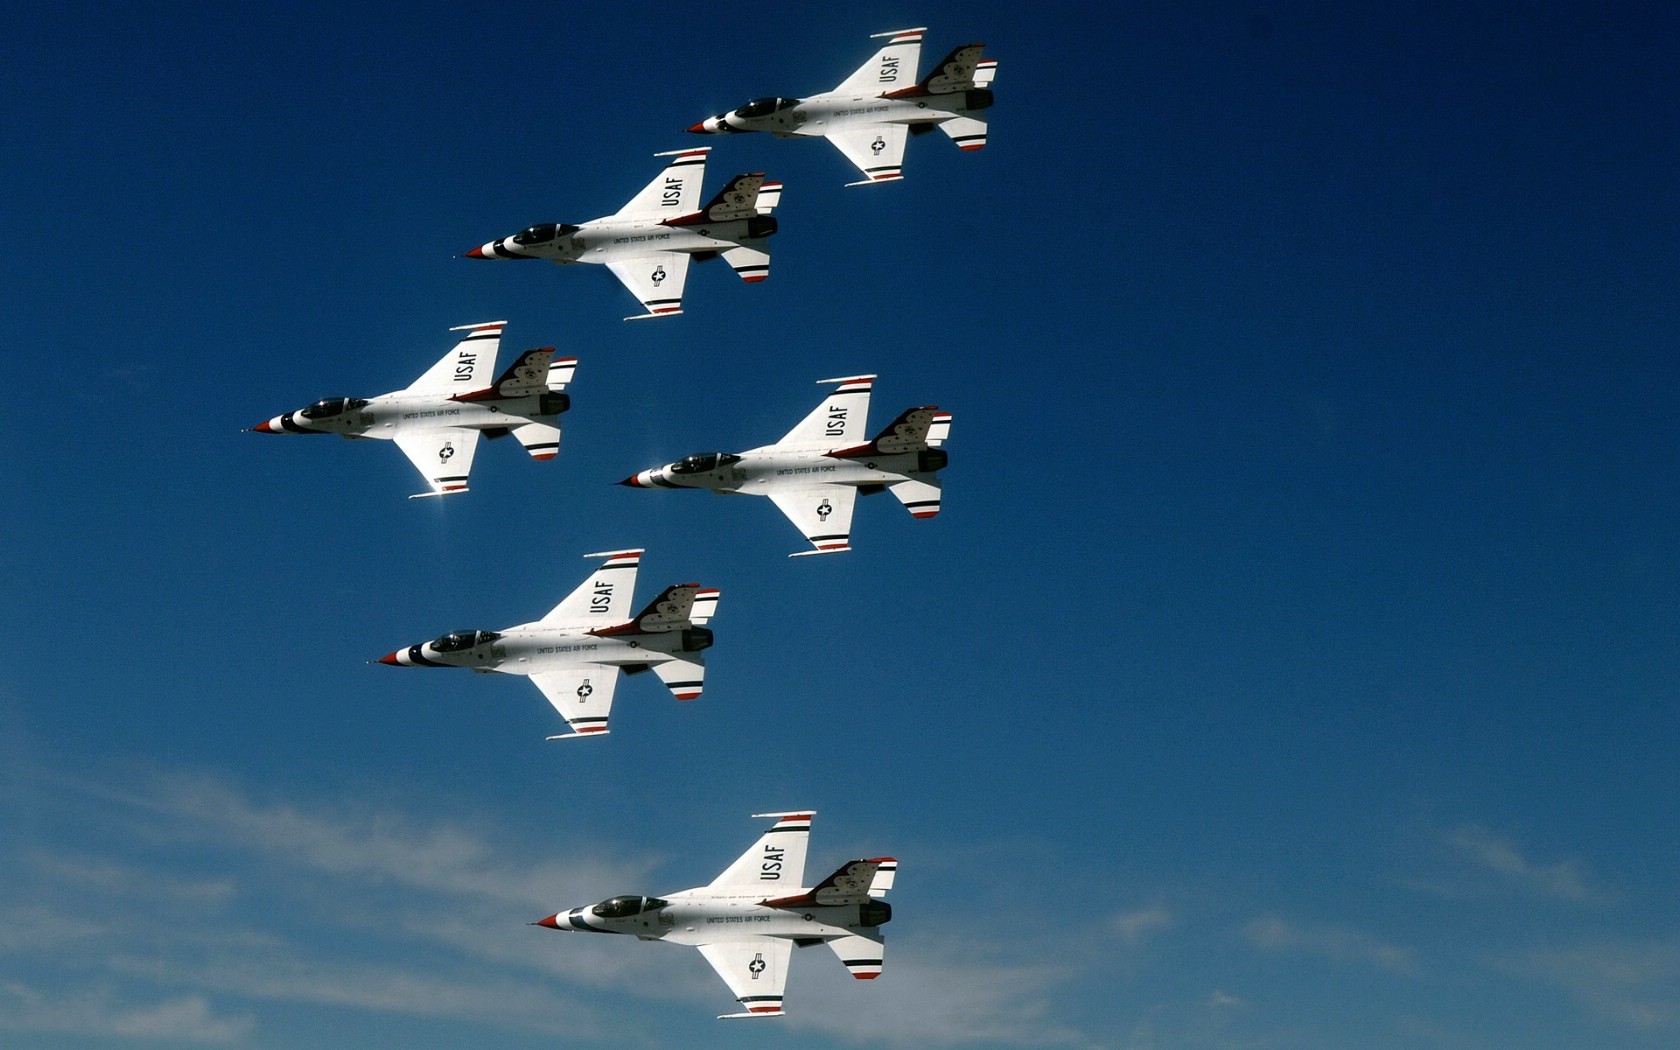 壁纸1680x1050美国空军USAF的雷鸟 USAF Thunderbirds 壁纸42壁纸 美国空军USAF的雷壁纸 美国空军USAF的雷图片 美国空军USAF的雷素材 军事壁纸 军事图库 军事图片素材桌面壁纸